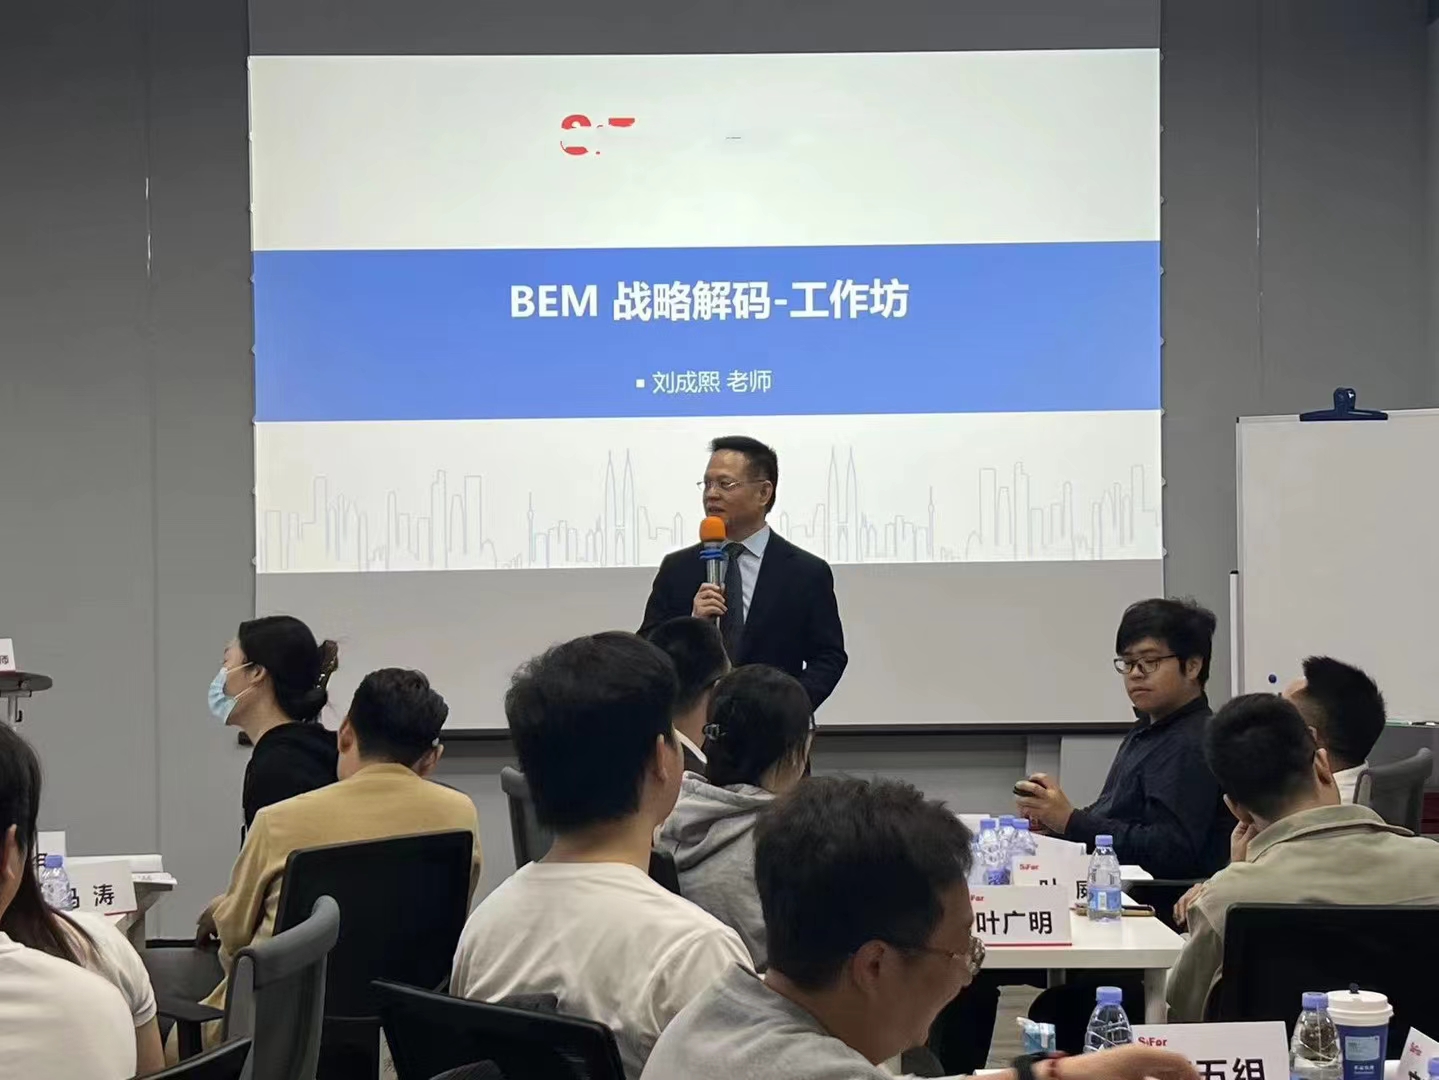 2023年12月2-3号刘成熙为深圳斯远电子技术公司成功授课《BEM战略解码-工作坊》课程